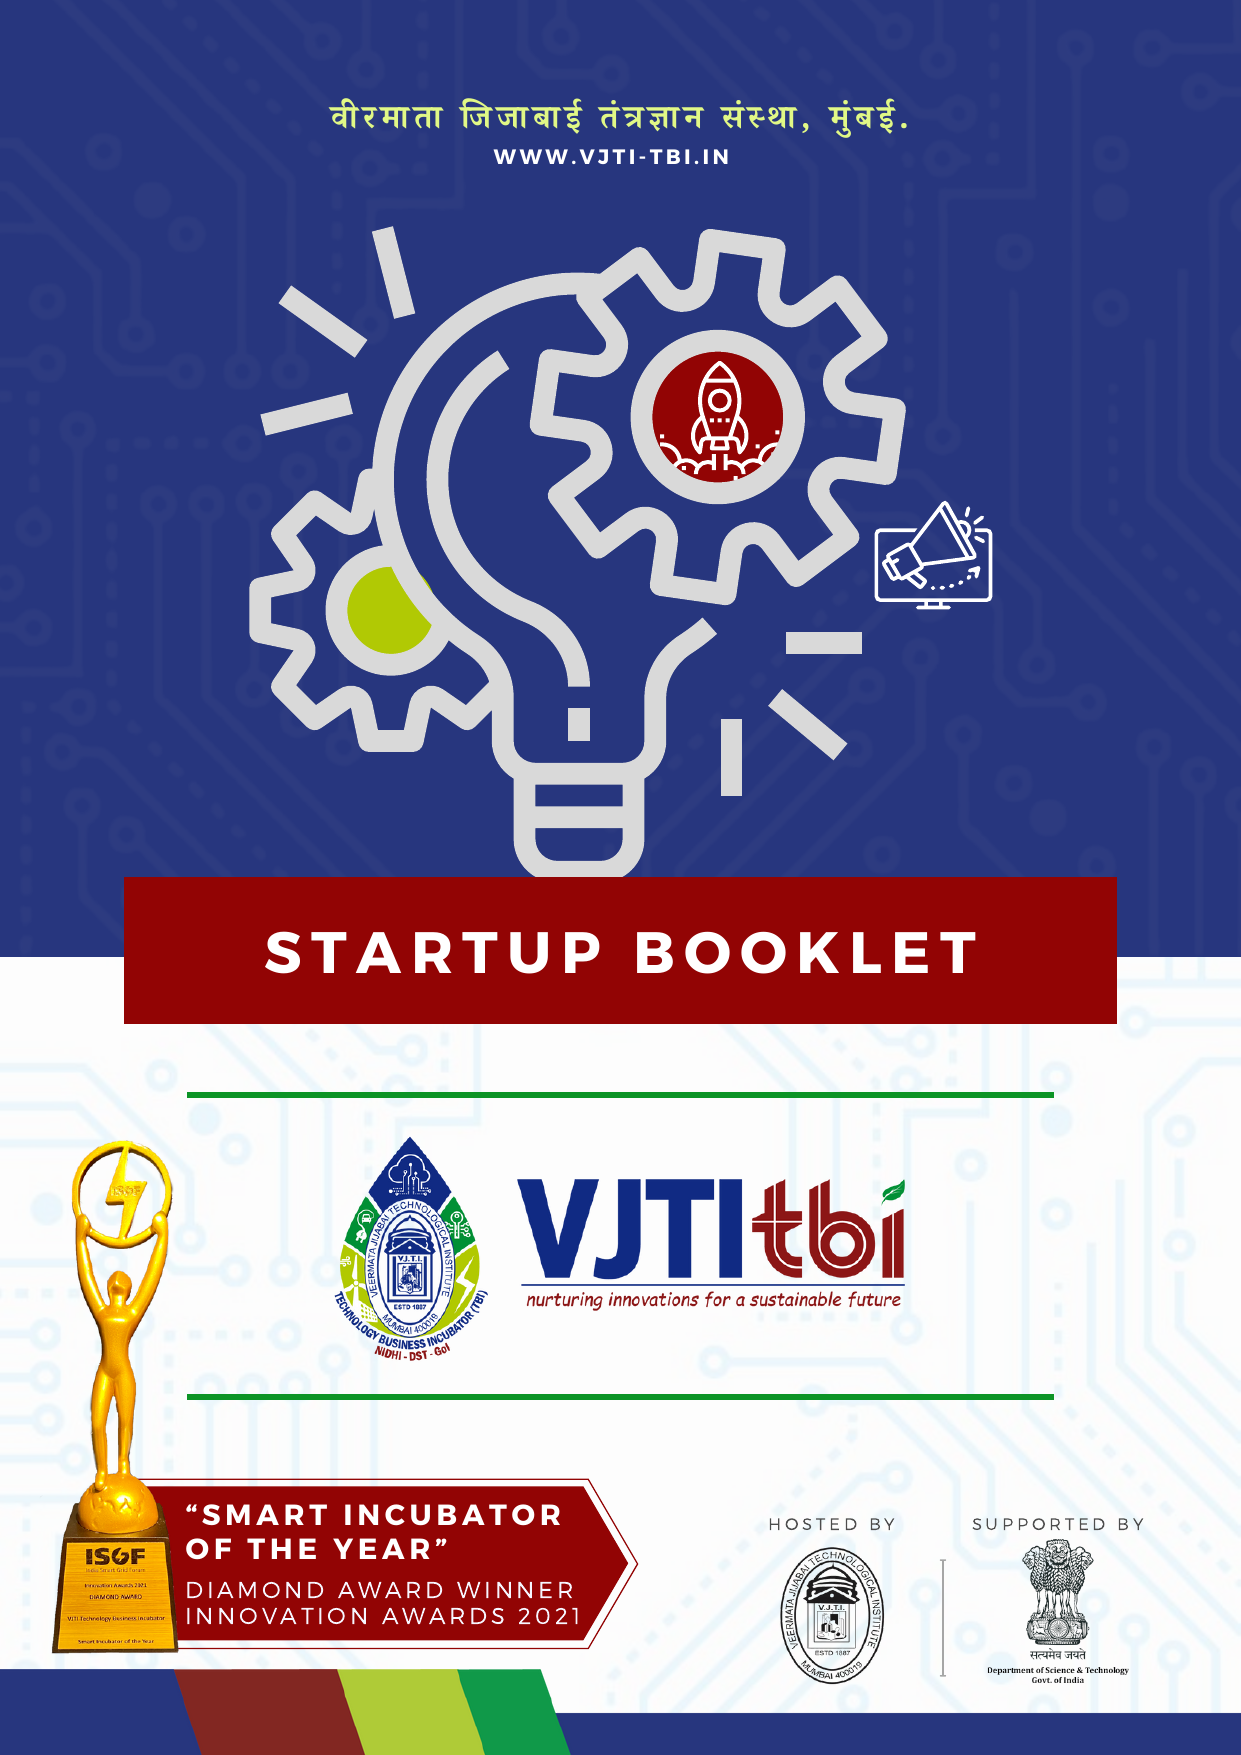 vjti_tbi_startup_booklet